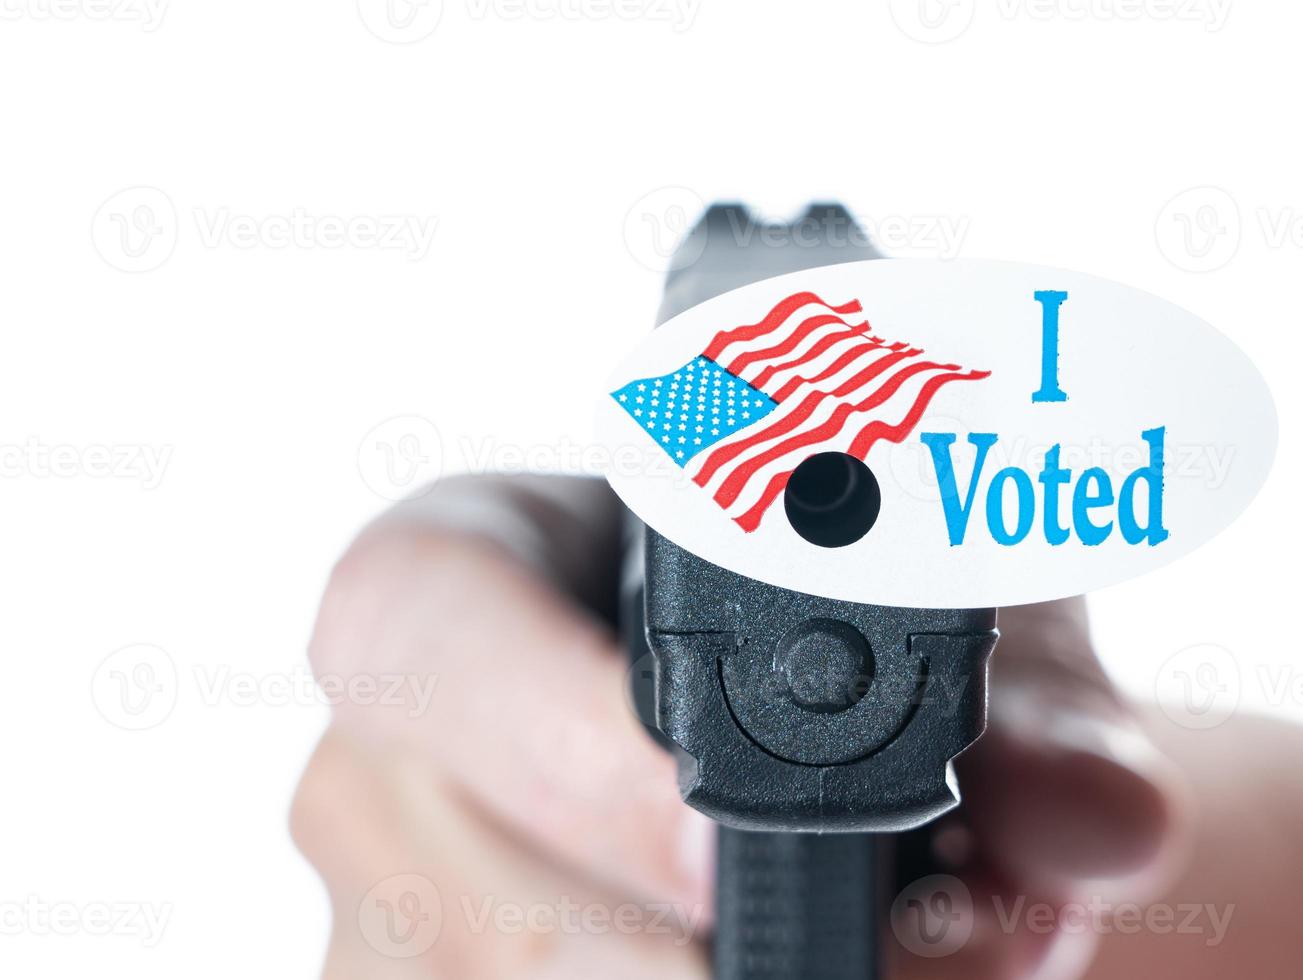 ik heb vandaag gestemd campagneknop met gat op pistool voor onderdrukking van kiezers foto